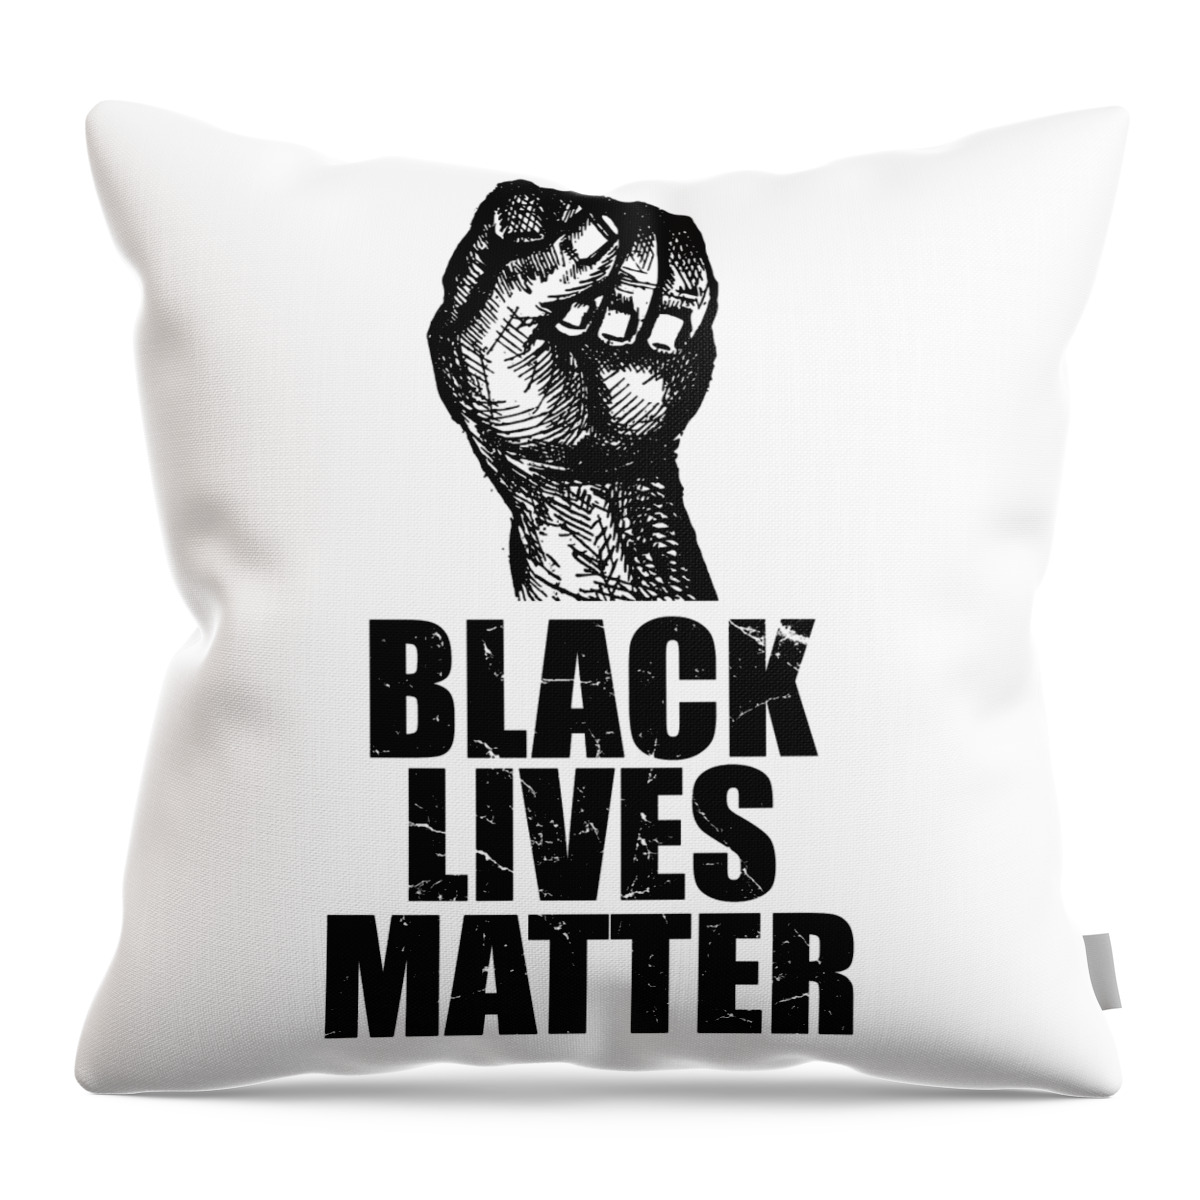 Cool Throw Pillow featuring the digital art BLM Black Lives Matter by Flippin Sweet Gear